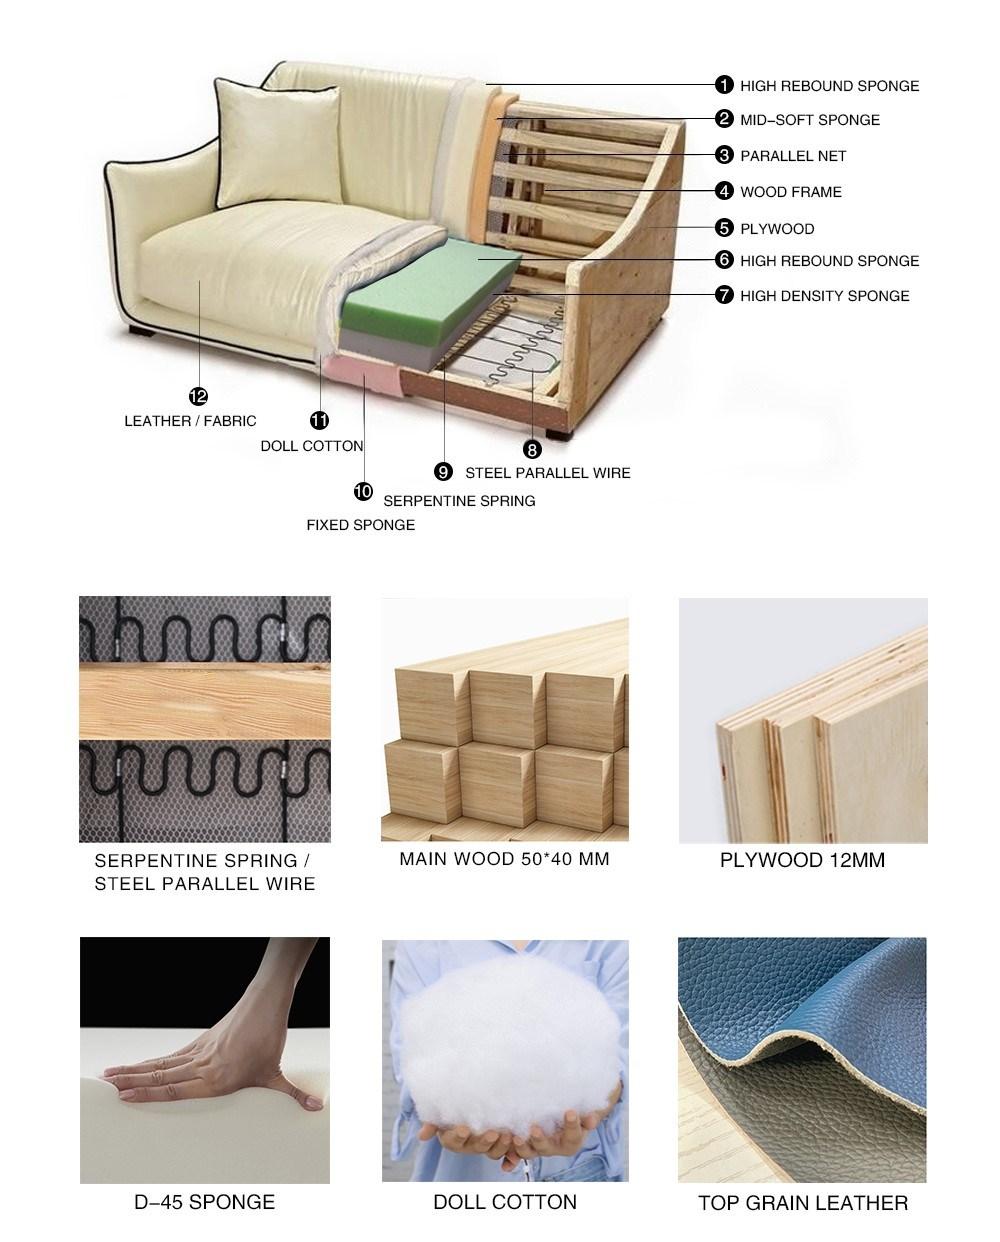 Hot Sale Modern Design Home Living Room Furniture Genuine Leather Corner LED Sofa